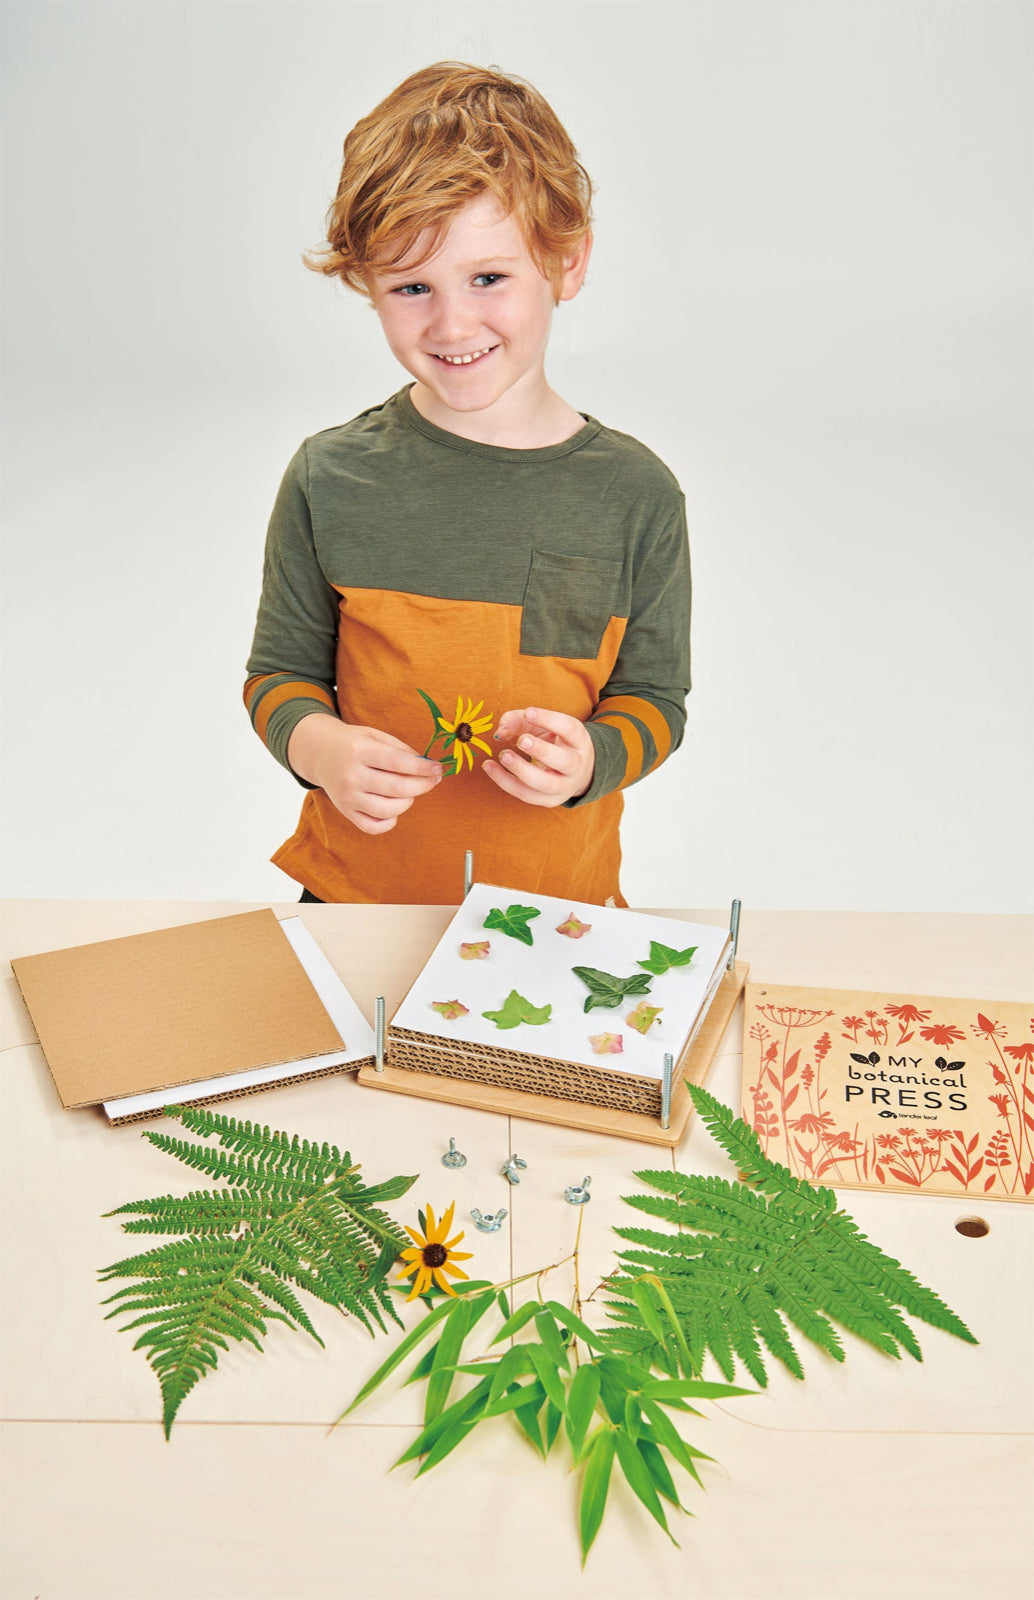 Pressa realizzata in legno per fiori - Tender leaf toys